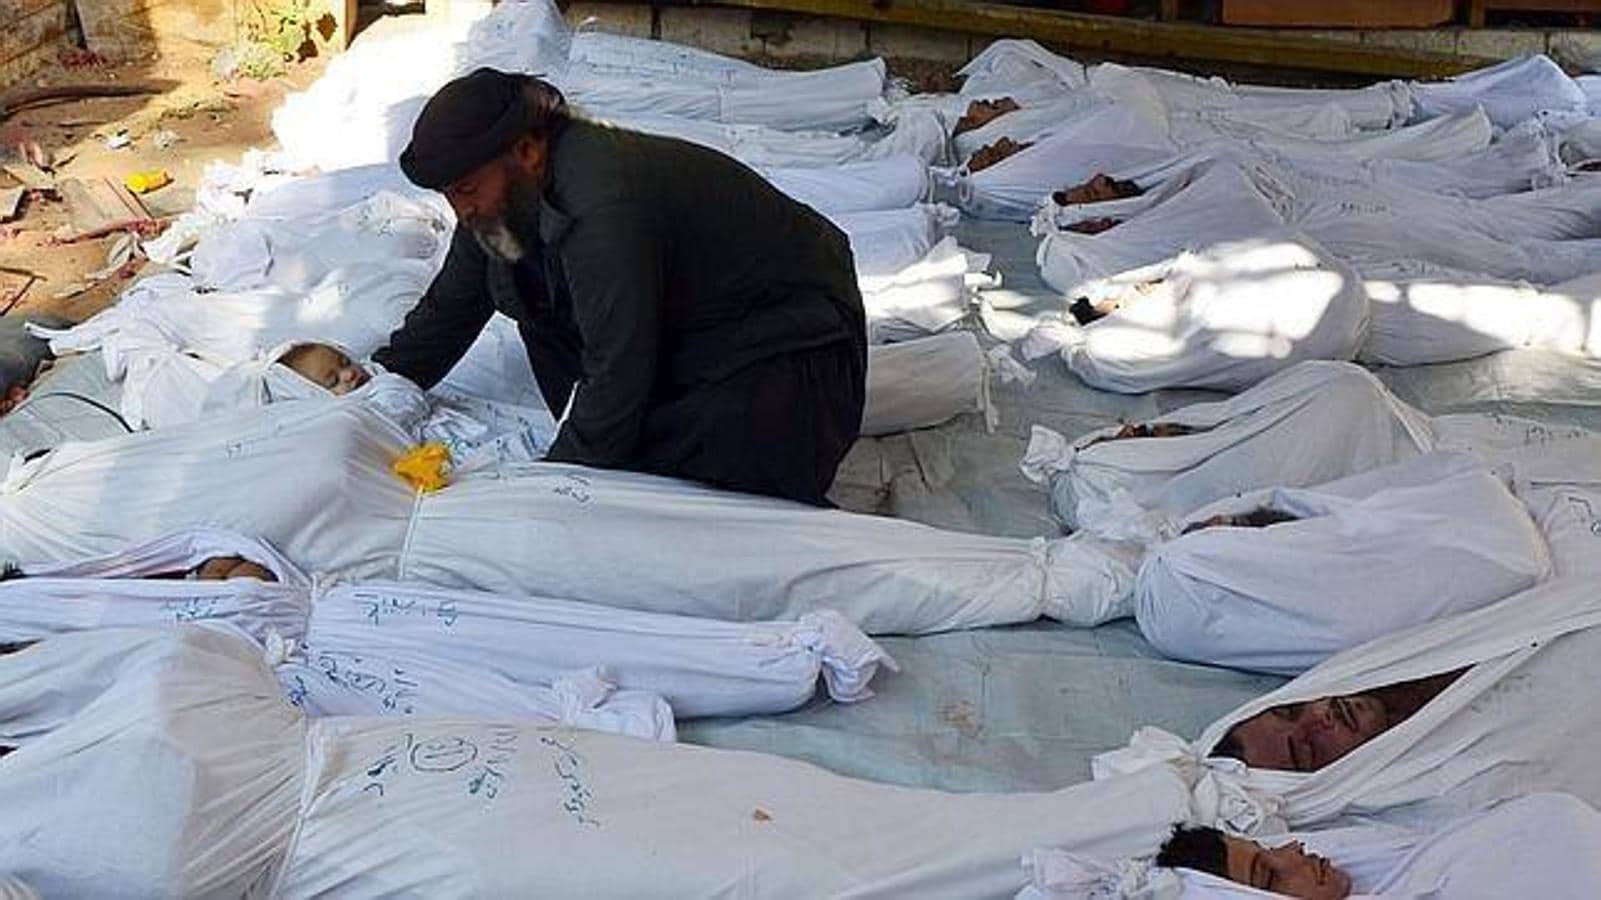 En agosto de 2013, Al Assad es acusado de utilizar gas serín contra los rebeldes, provocando 1.400 muertos 